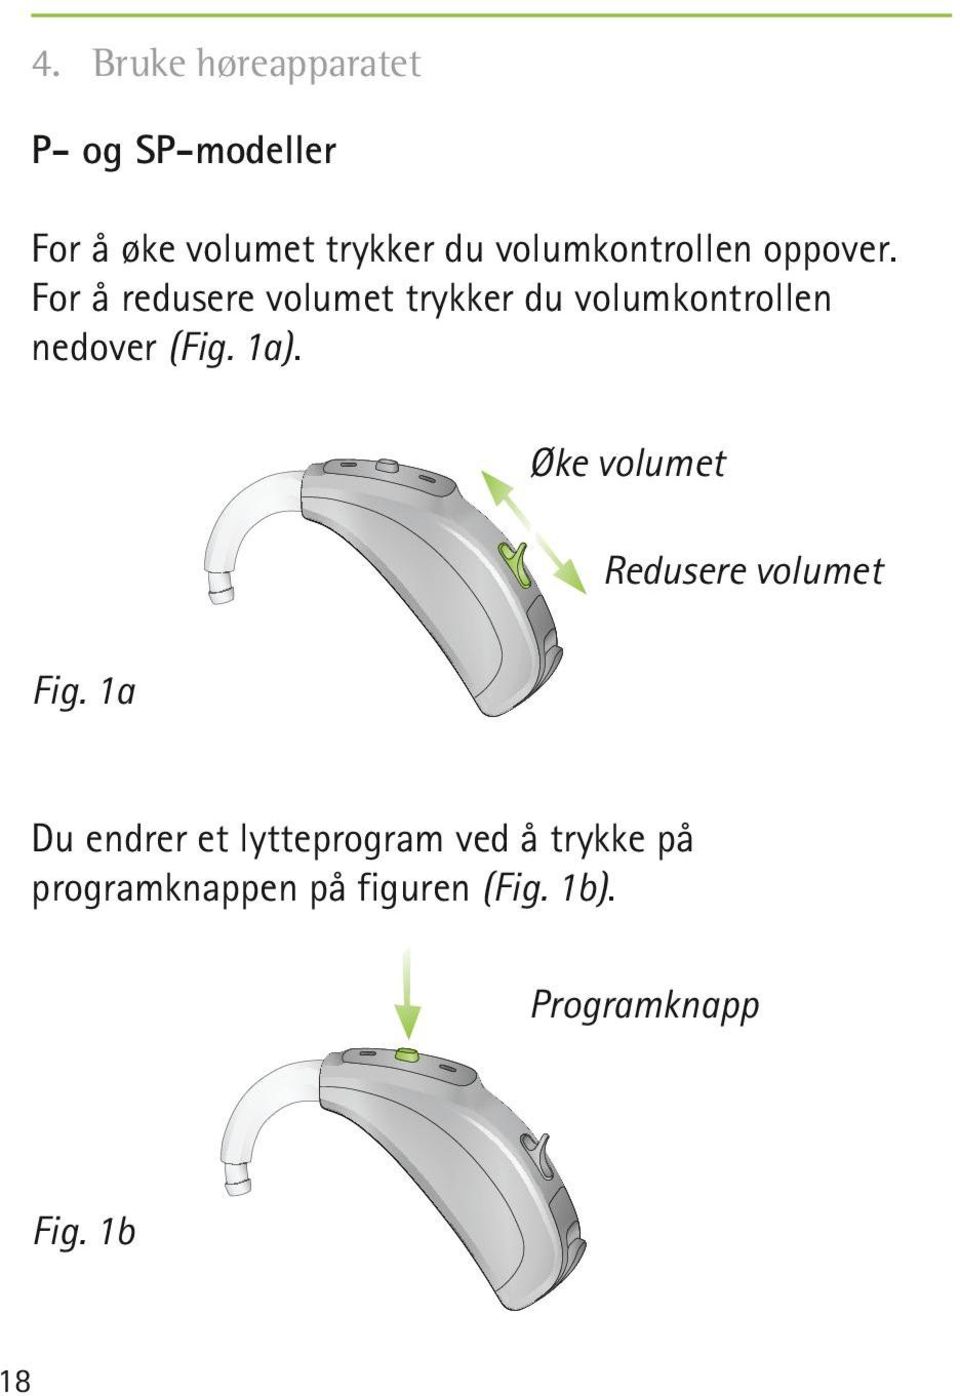 For å redusere volumet trykker du volumkontrollen nedover (Fig. 1a).